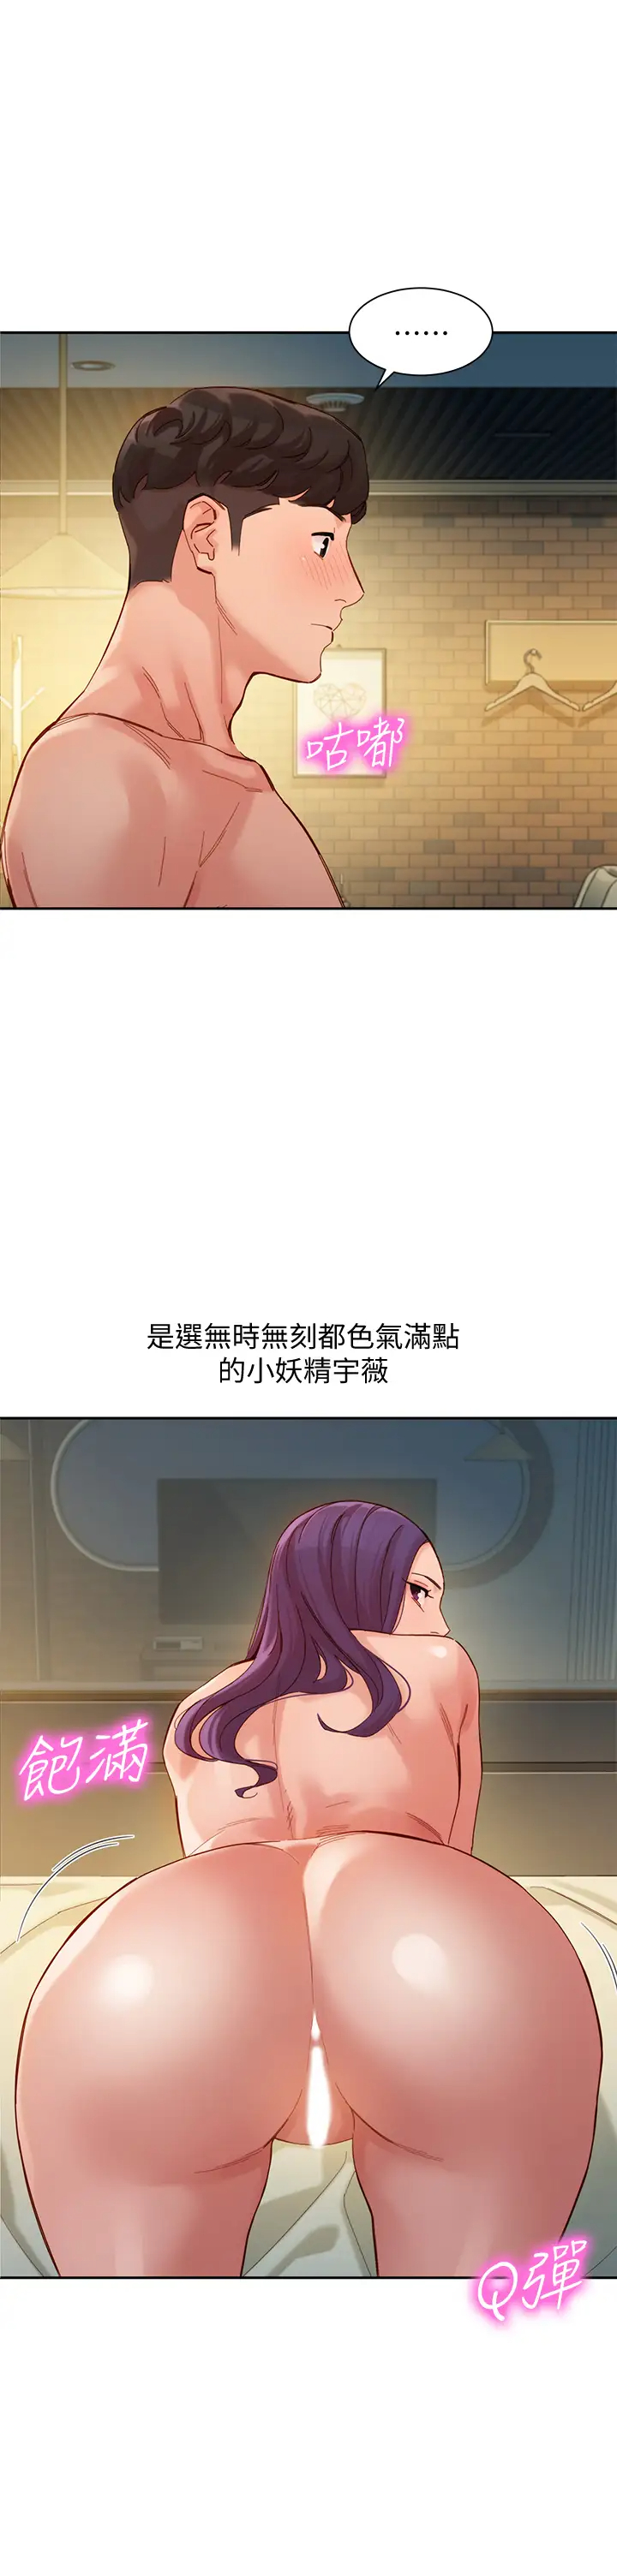 韩国污漫画 女神寫真 第52话淫靡的双飞体验 1